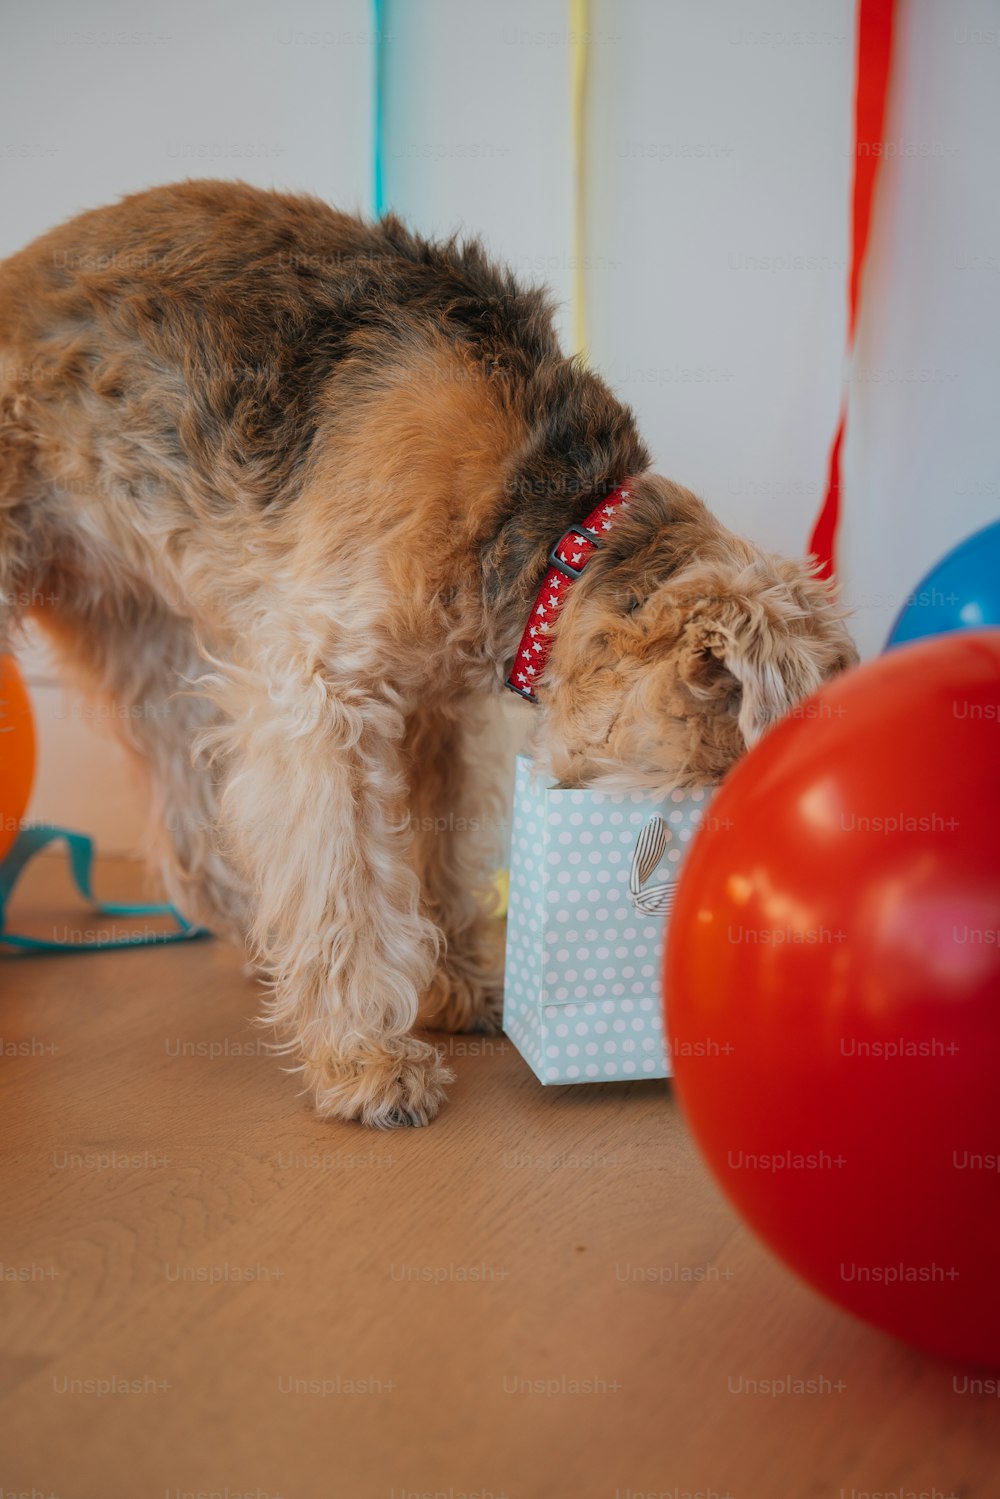 Ein kleiner Hund steht neben einem Geburtstagsgeschenk